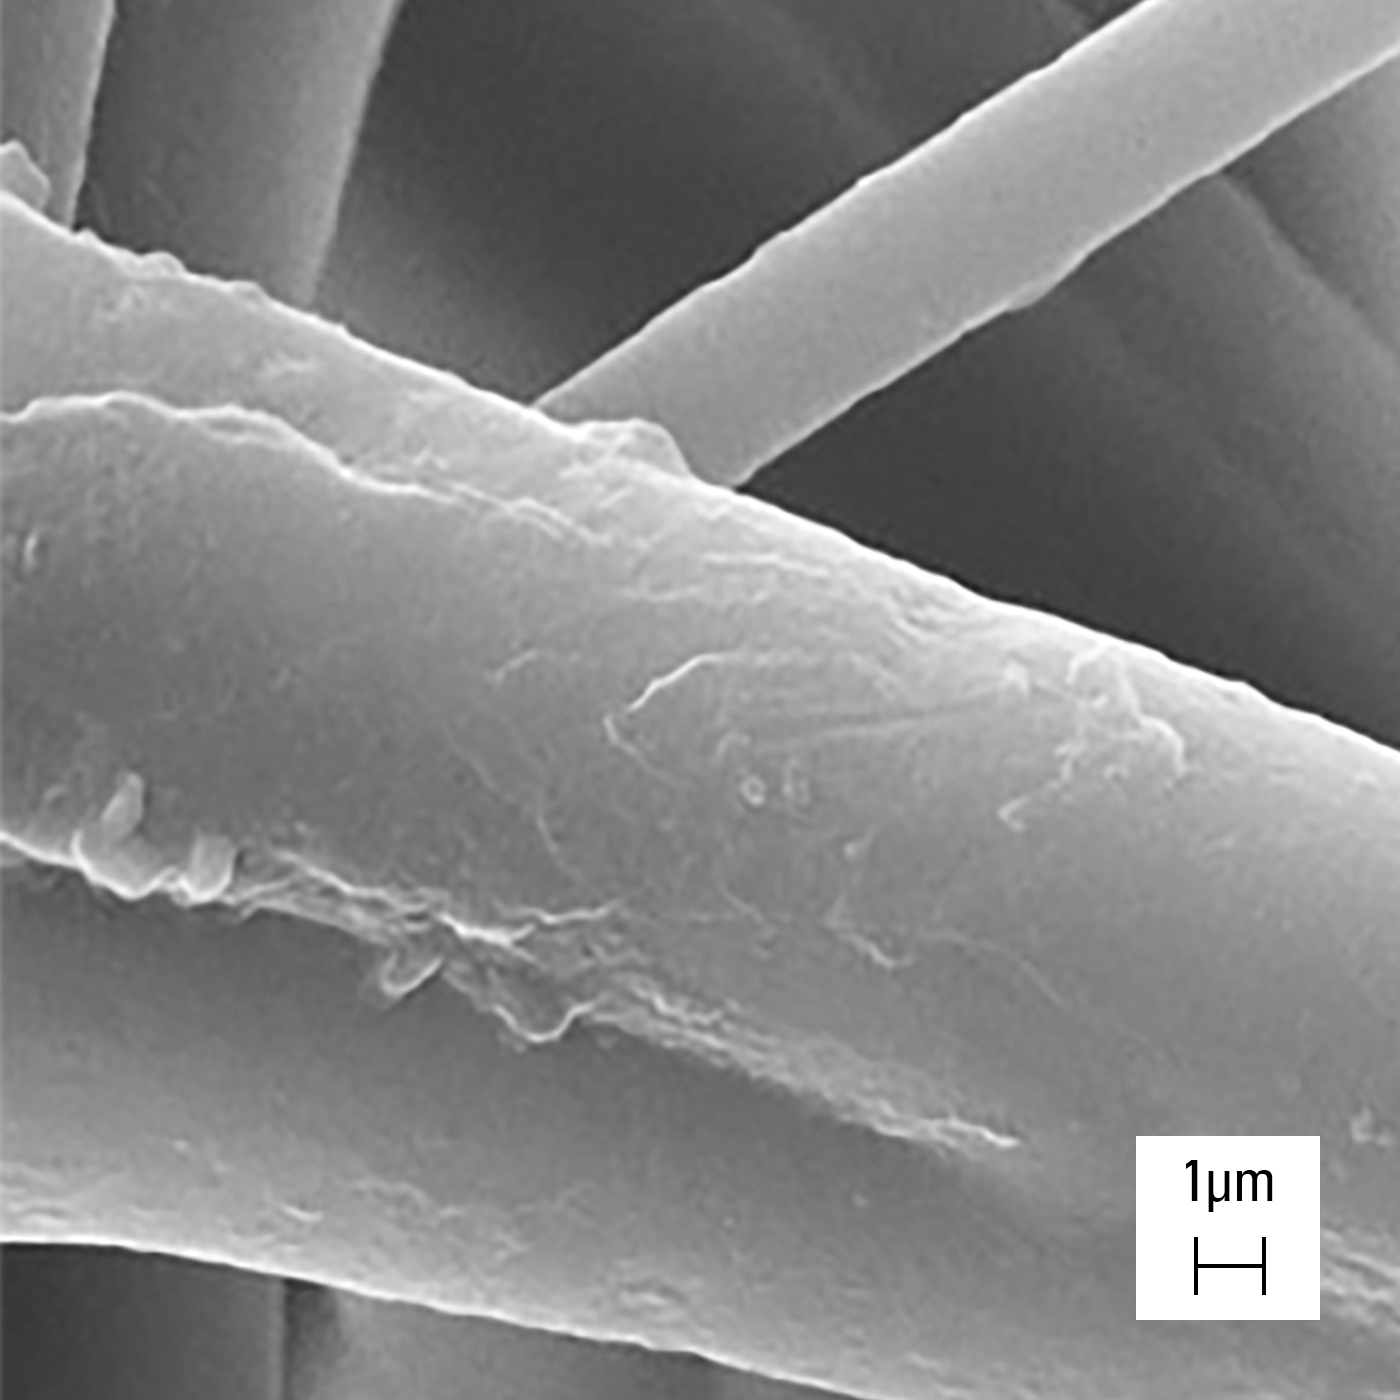 Struktura włóknista filtra H14 obserwowana pod skaningowym mikroskopem elektronowym